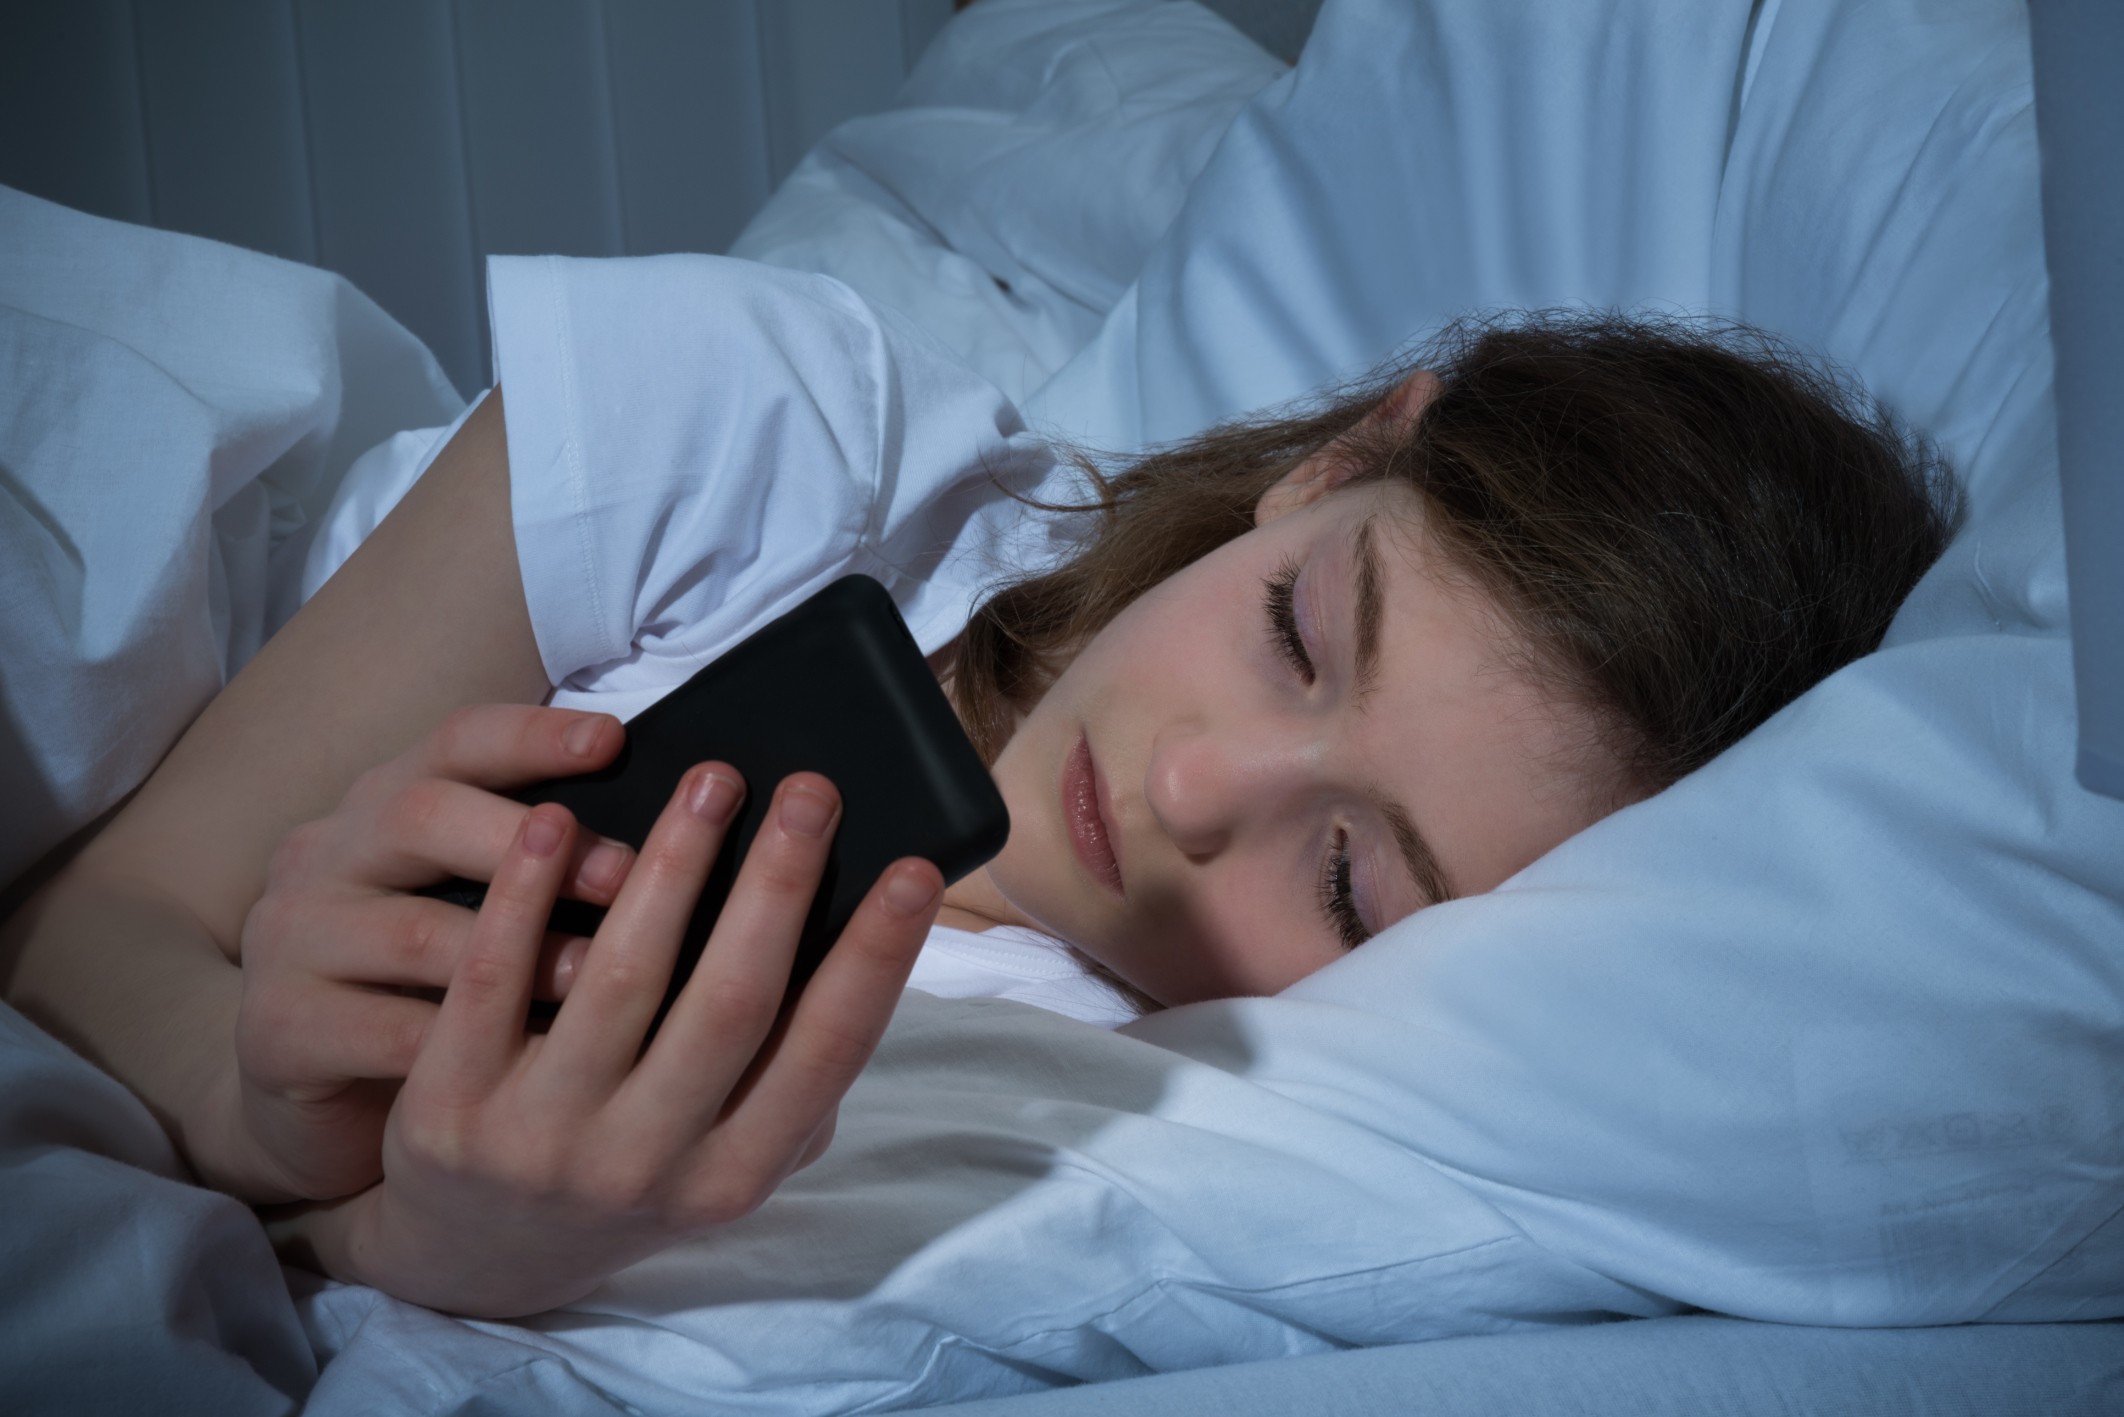 Menina mexendo no celular na cama (Foto: Thinkstock)